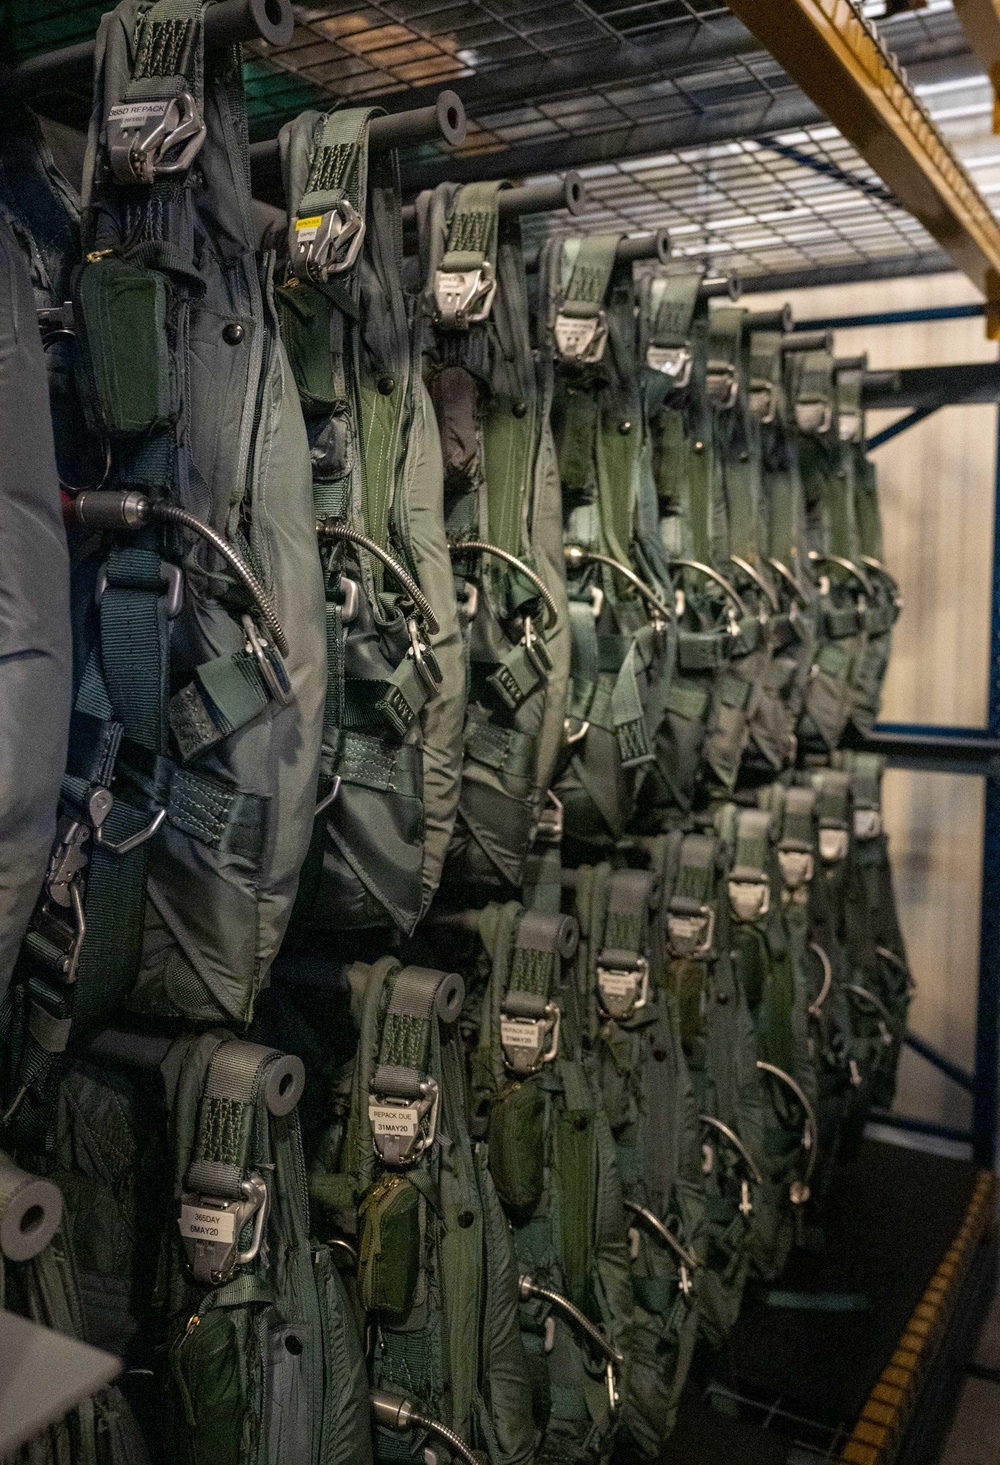 AFE updates parachutes, keeps C-17 aircrews safe